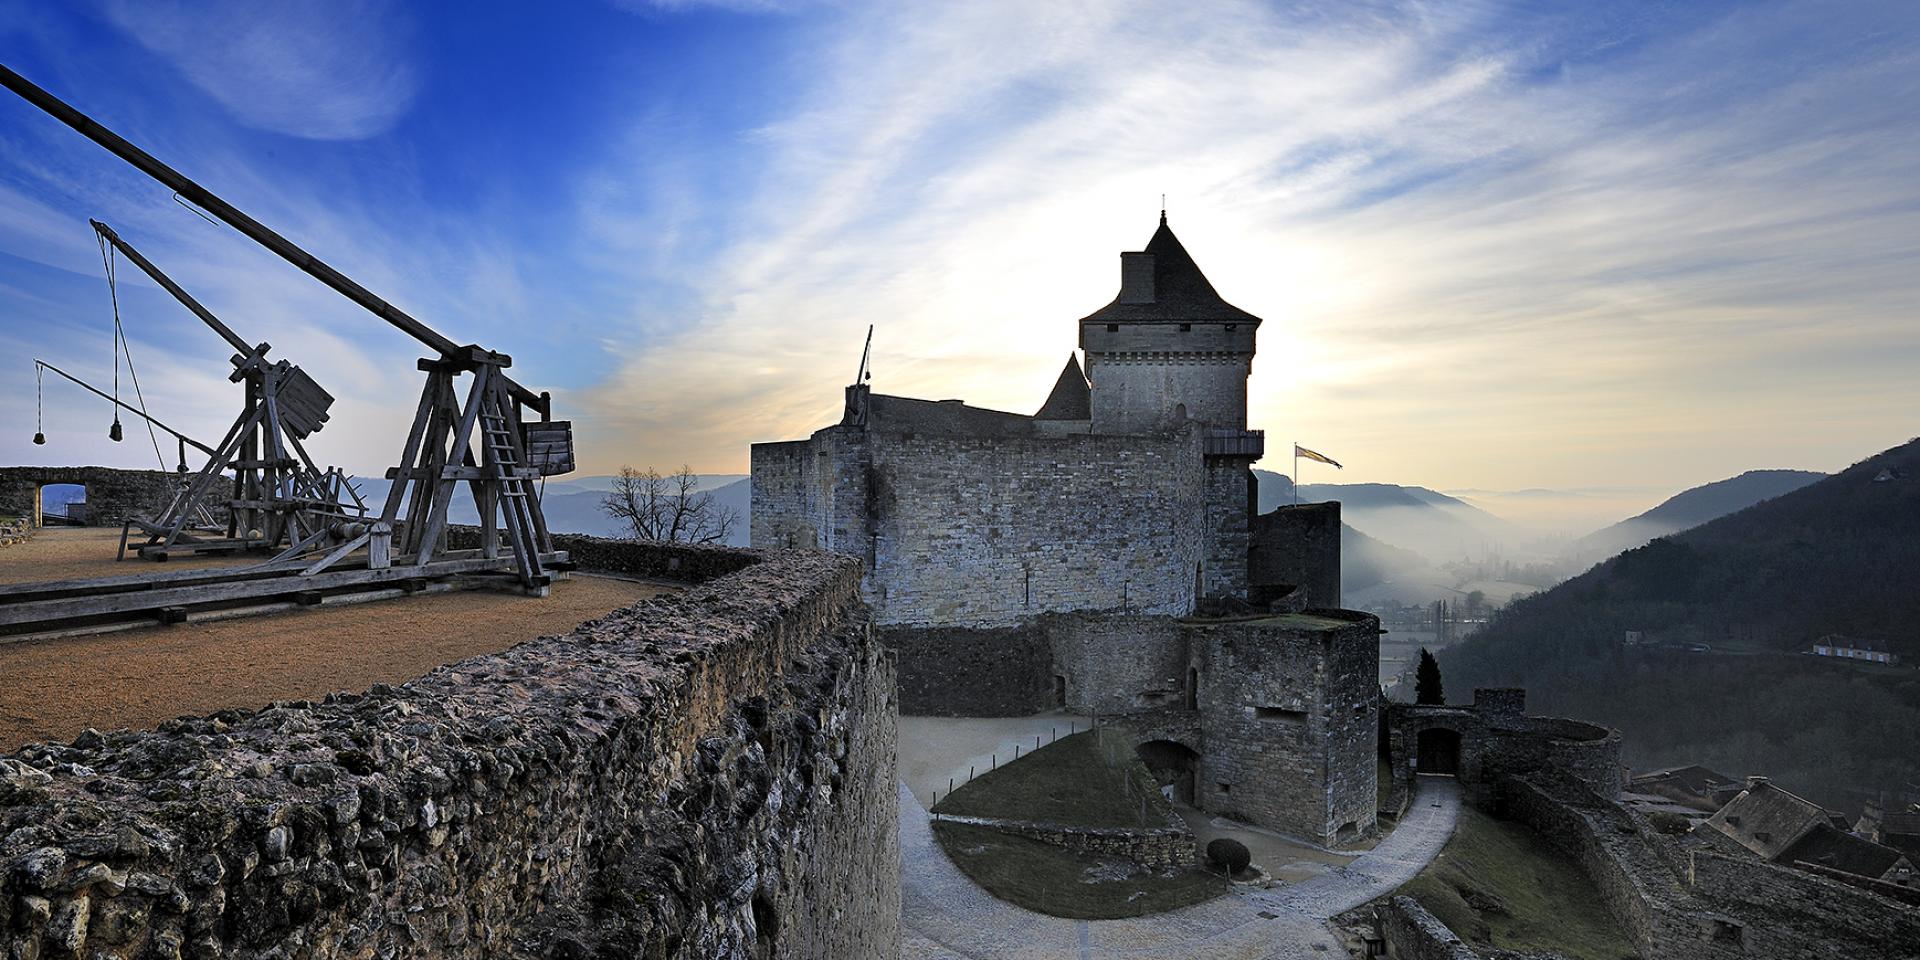 19-surprising-facts-about-chateau-de-castelnaud